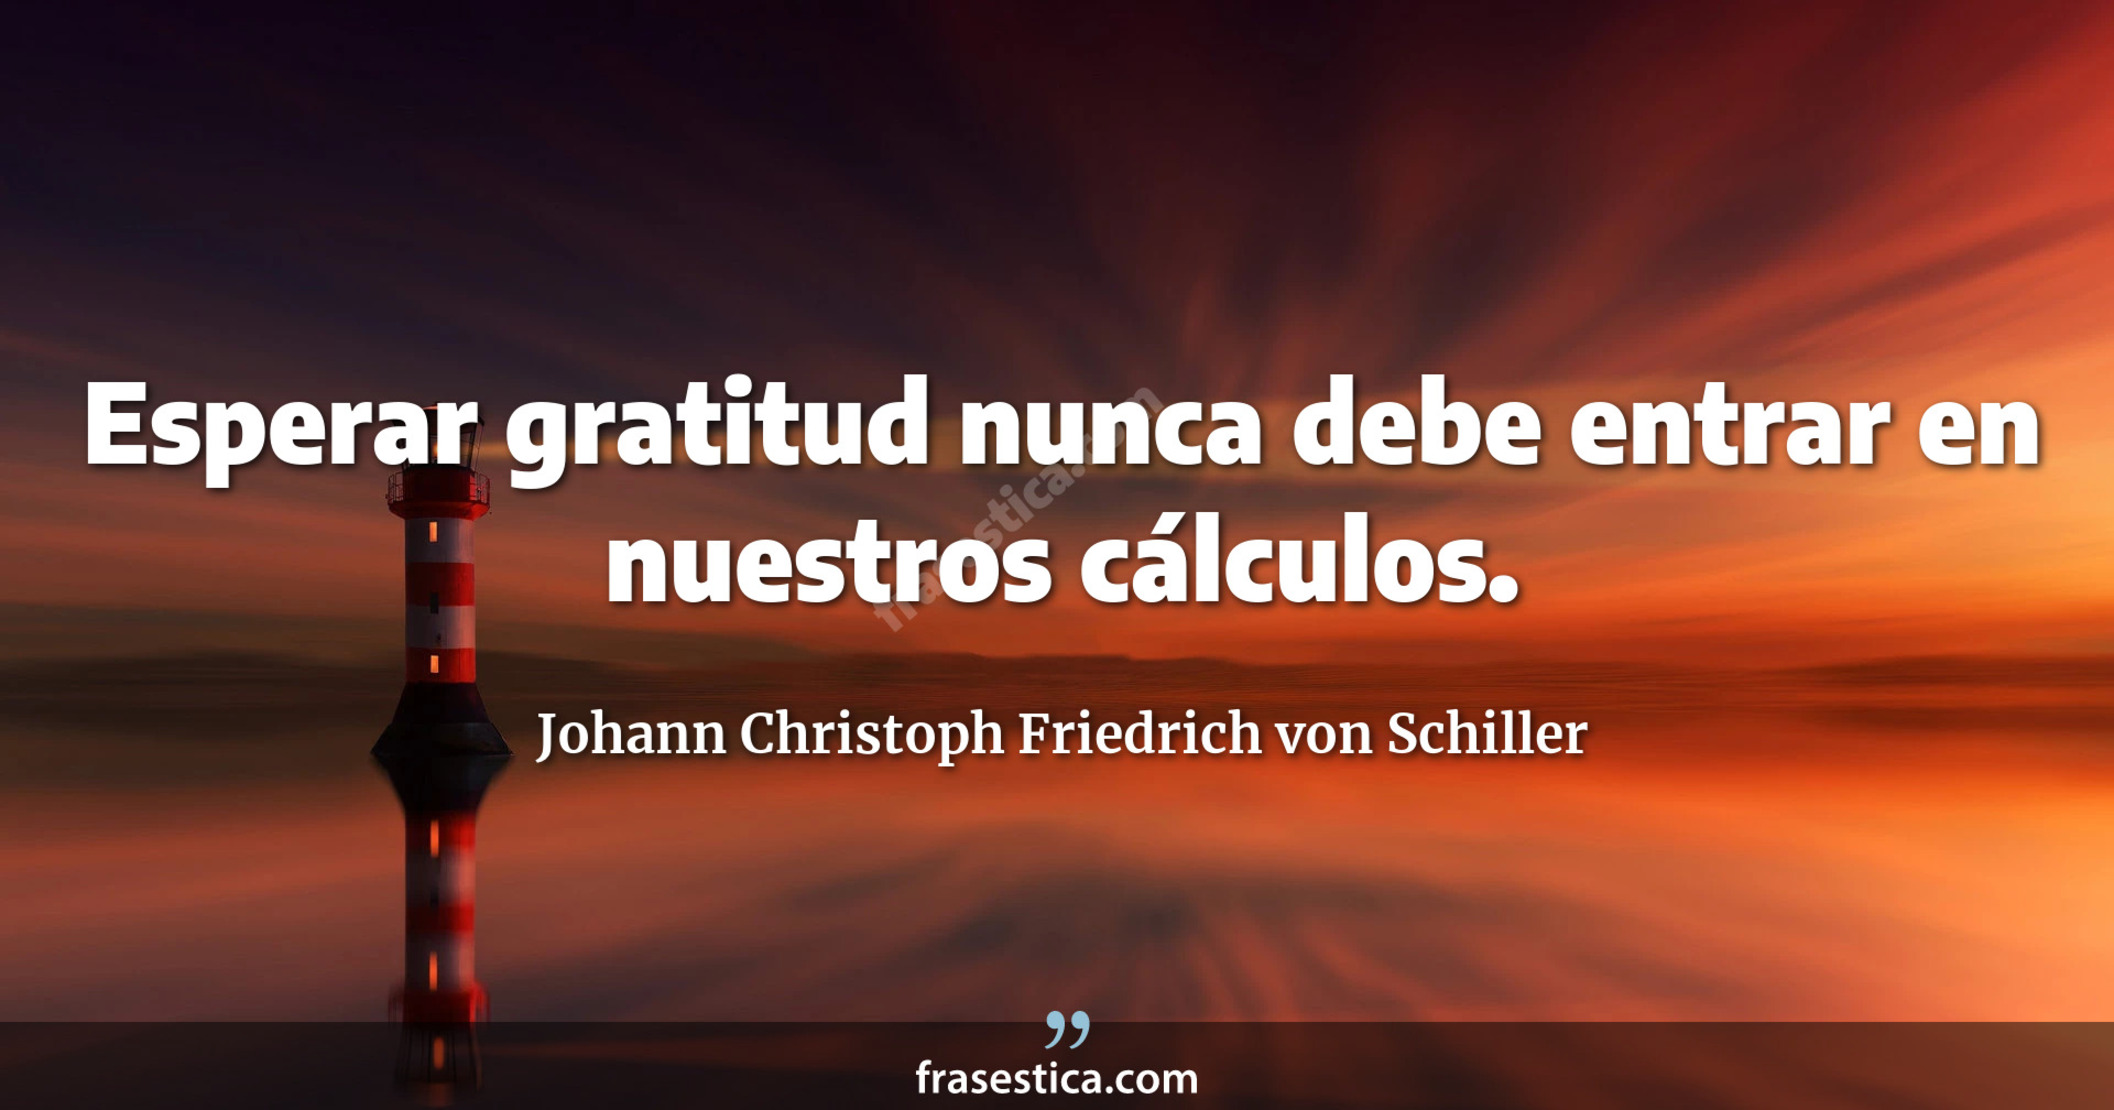 Esperar gratitud nunca debe entrar en nuestros cálculos. - Johann Christoph Friedrich von Schiller